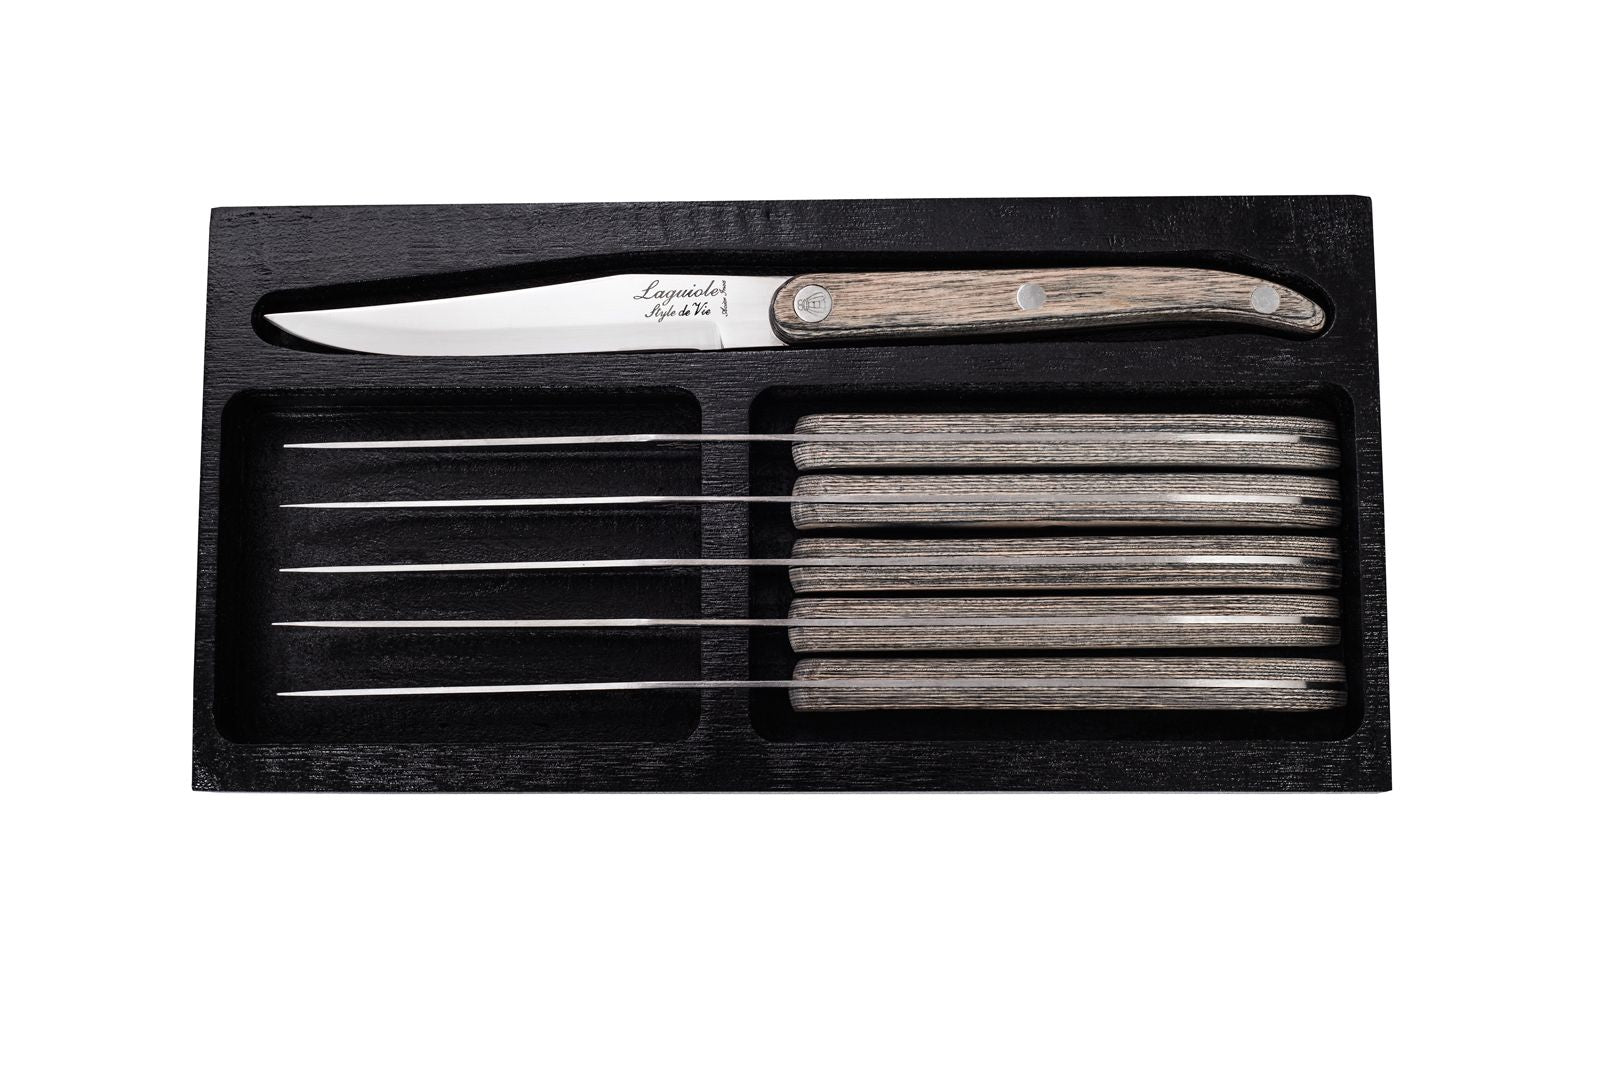 Style De Vie Authentique Laguiole Innovation Line Steakmesser-Set, 6-teilig, graues Pakka mit glatter Klinge